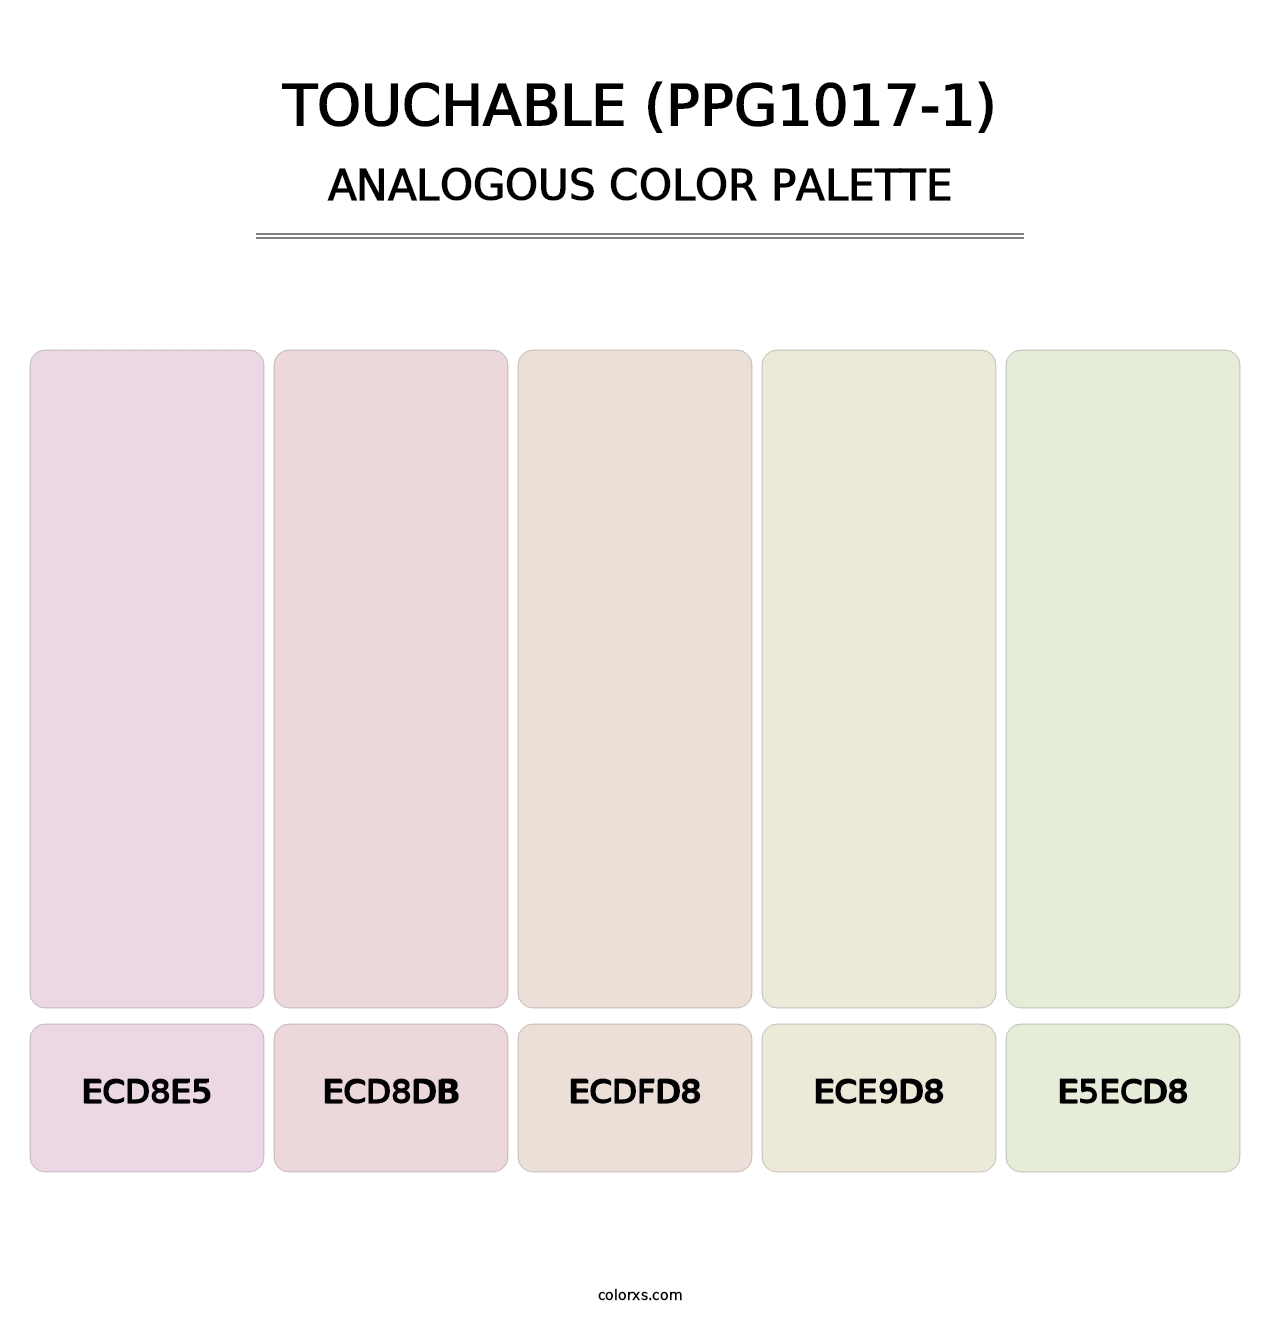 Touchable (PPG1017-1) - Analogous Color Palette